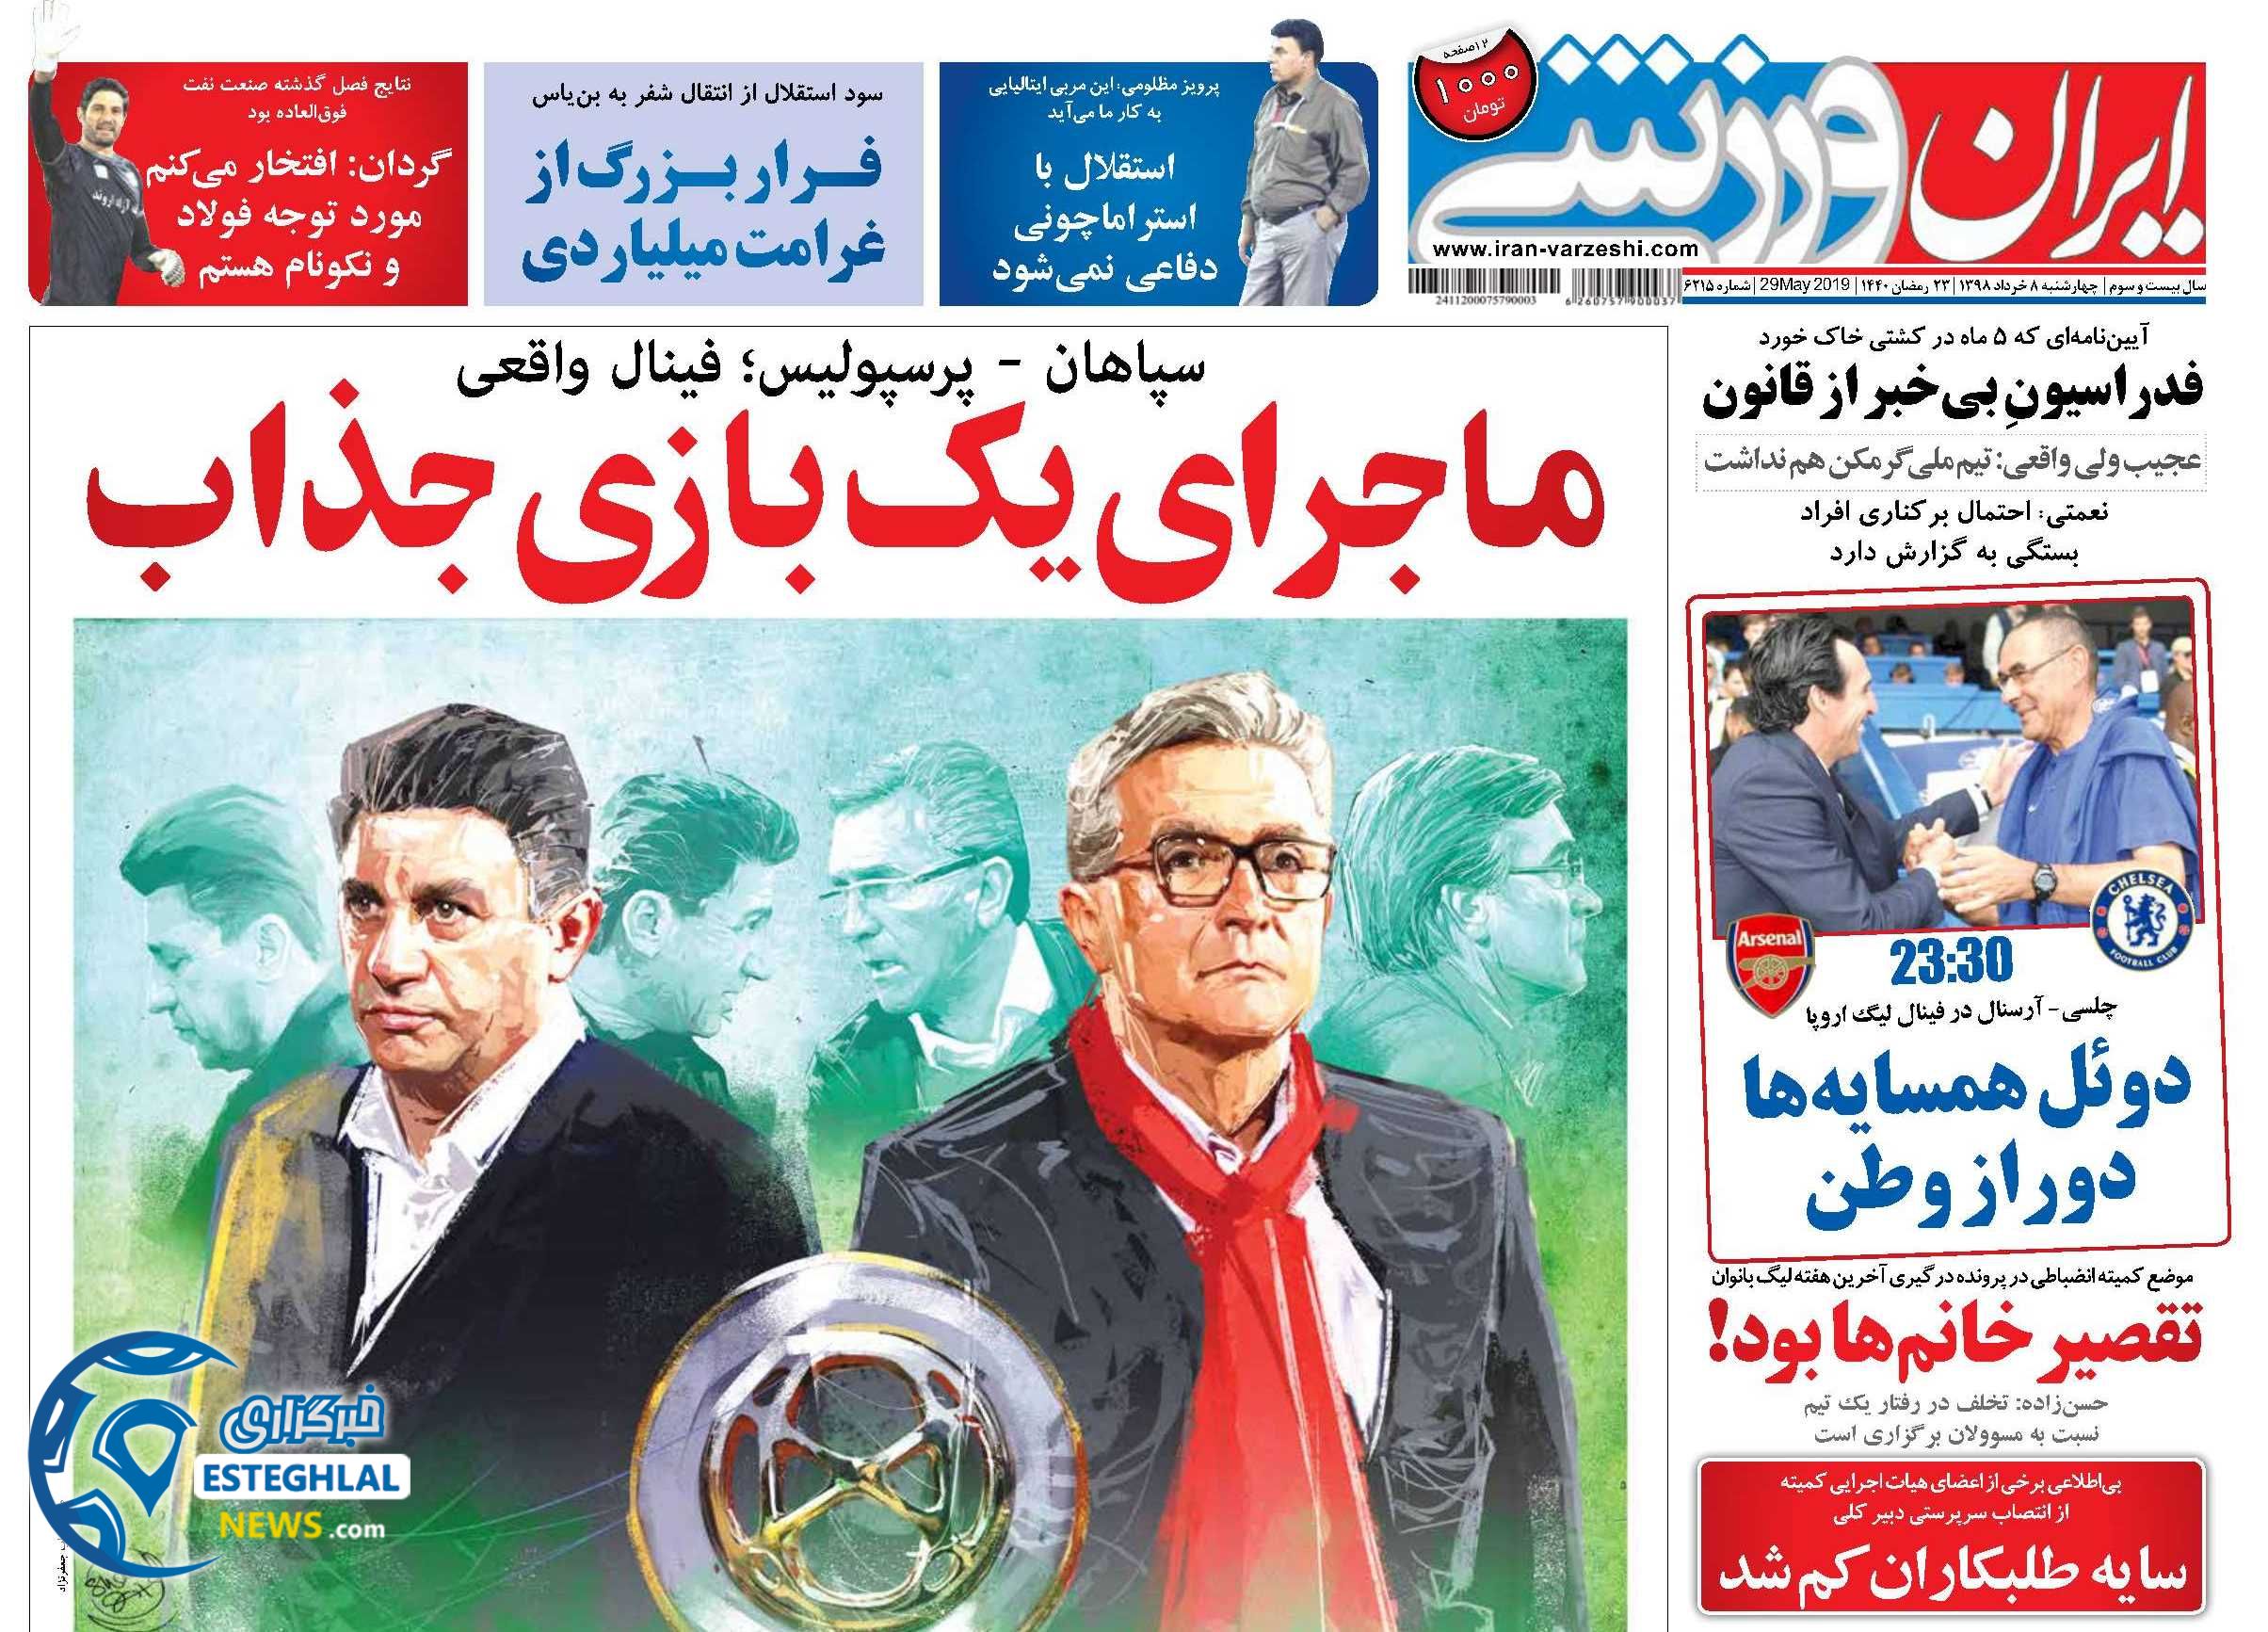 روزنامه ایران ورزشی چهارشنبه 8 خرداد 1398         